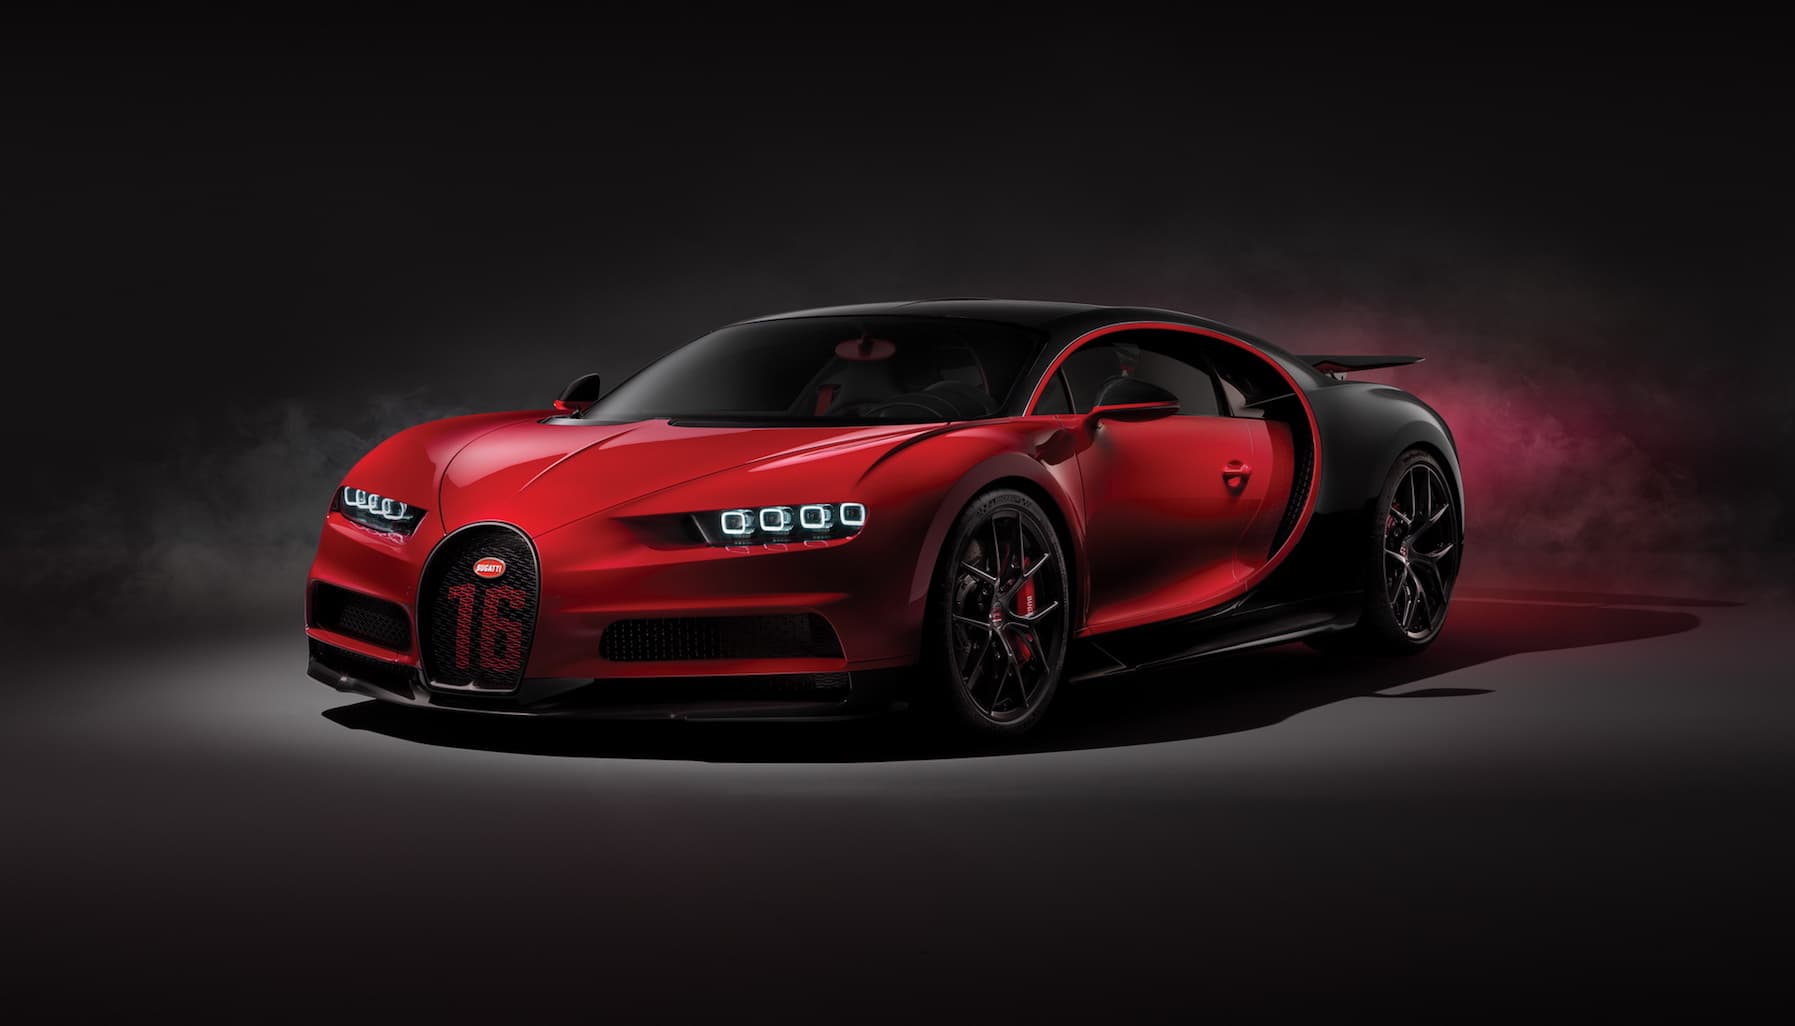 Siêu phẩm tốc độ Bugatti Chiron Sport chốt giá 3,26 triệu USD